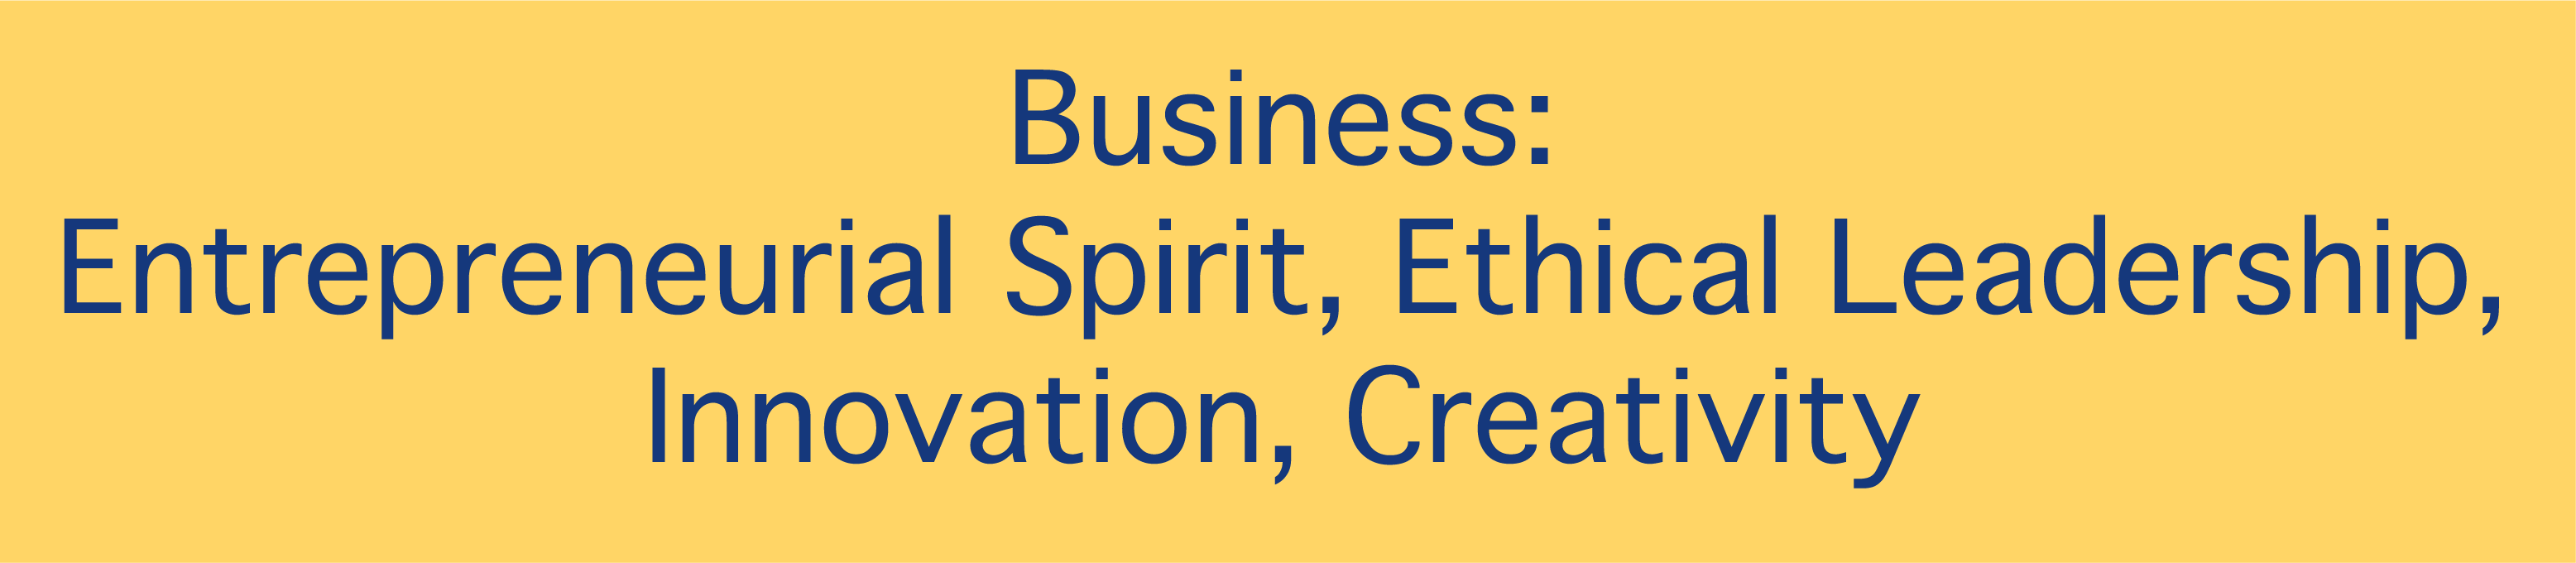 Business: Entrepreneurial Spirit, Ethical Leadership, Innovation, Creativity